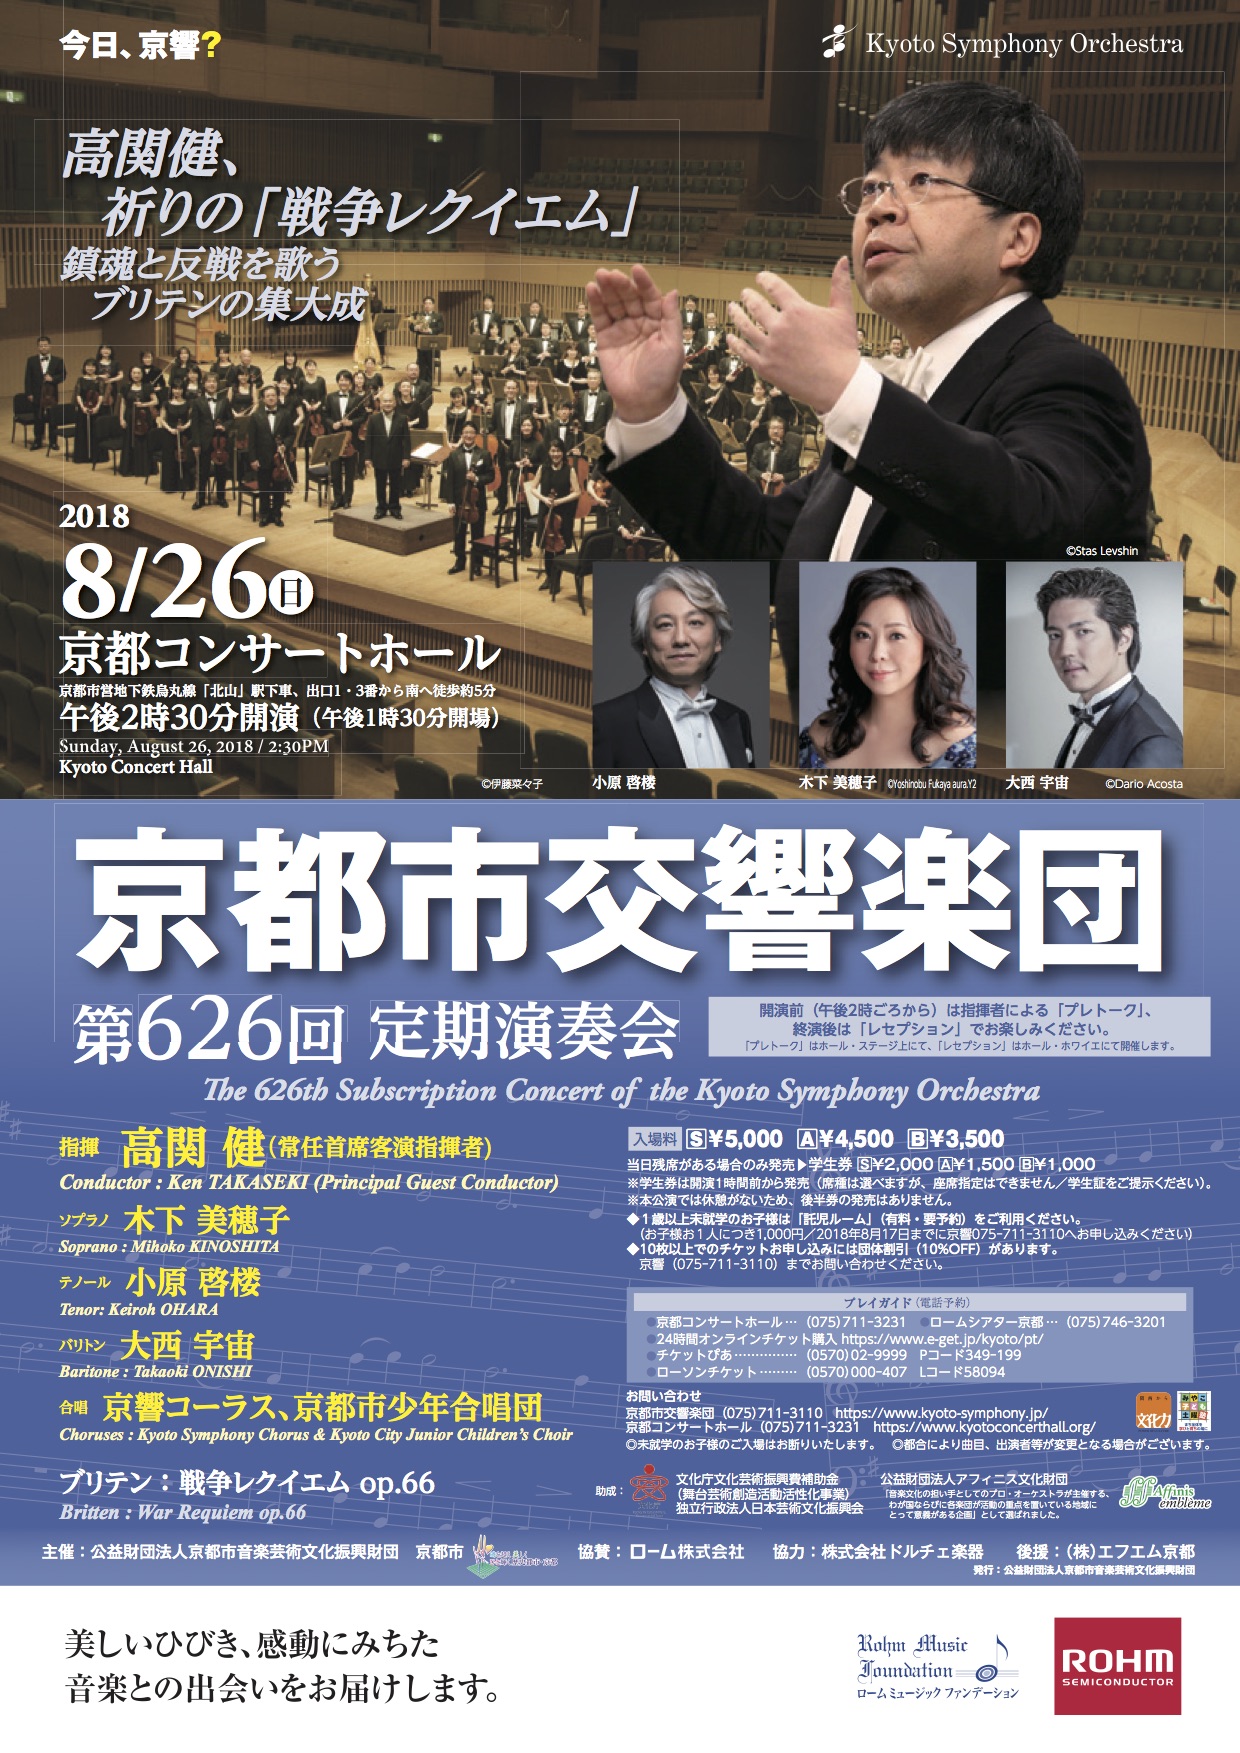 少年 合唱 団 京都 市 京都と大阪でレベルの高い合唱団を教えてください。